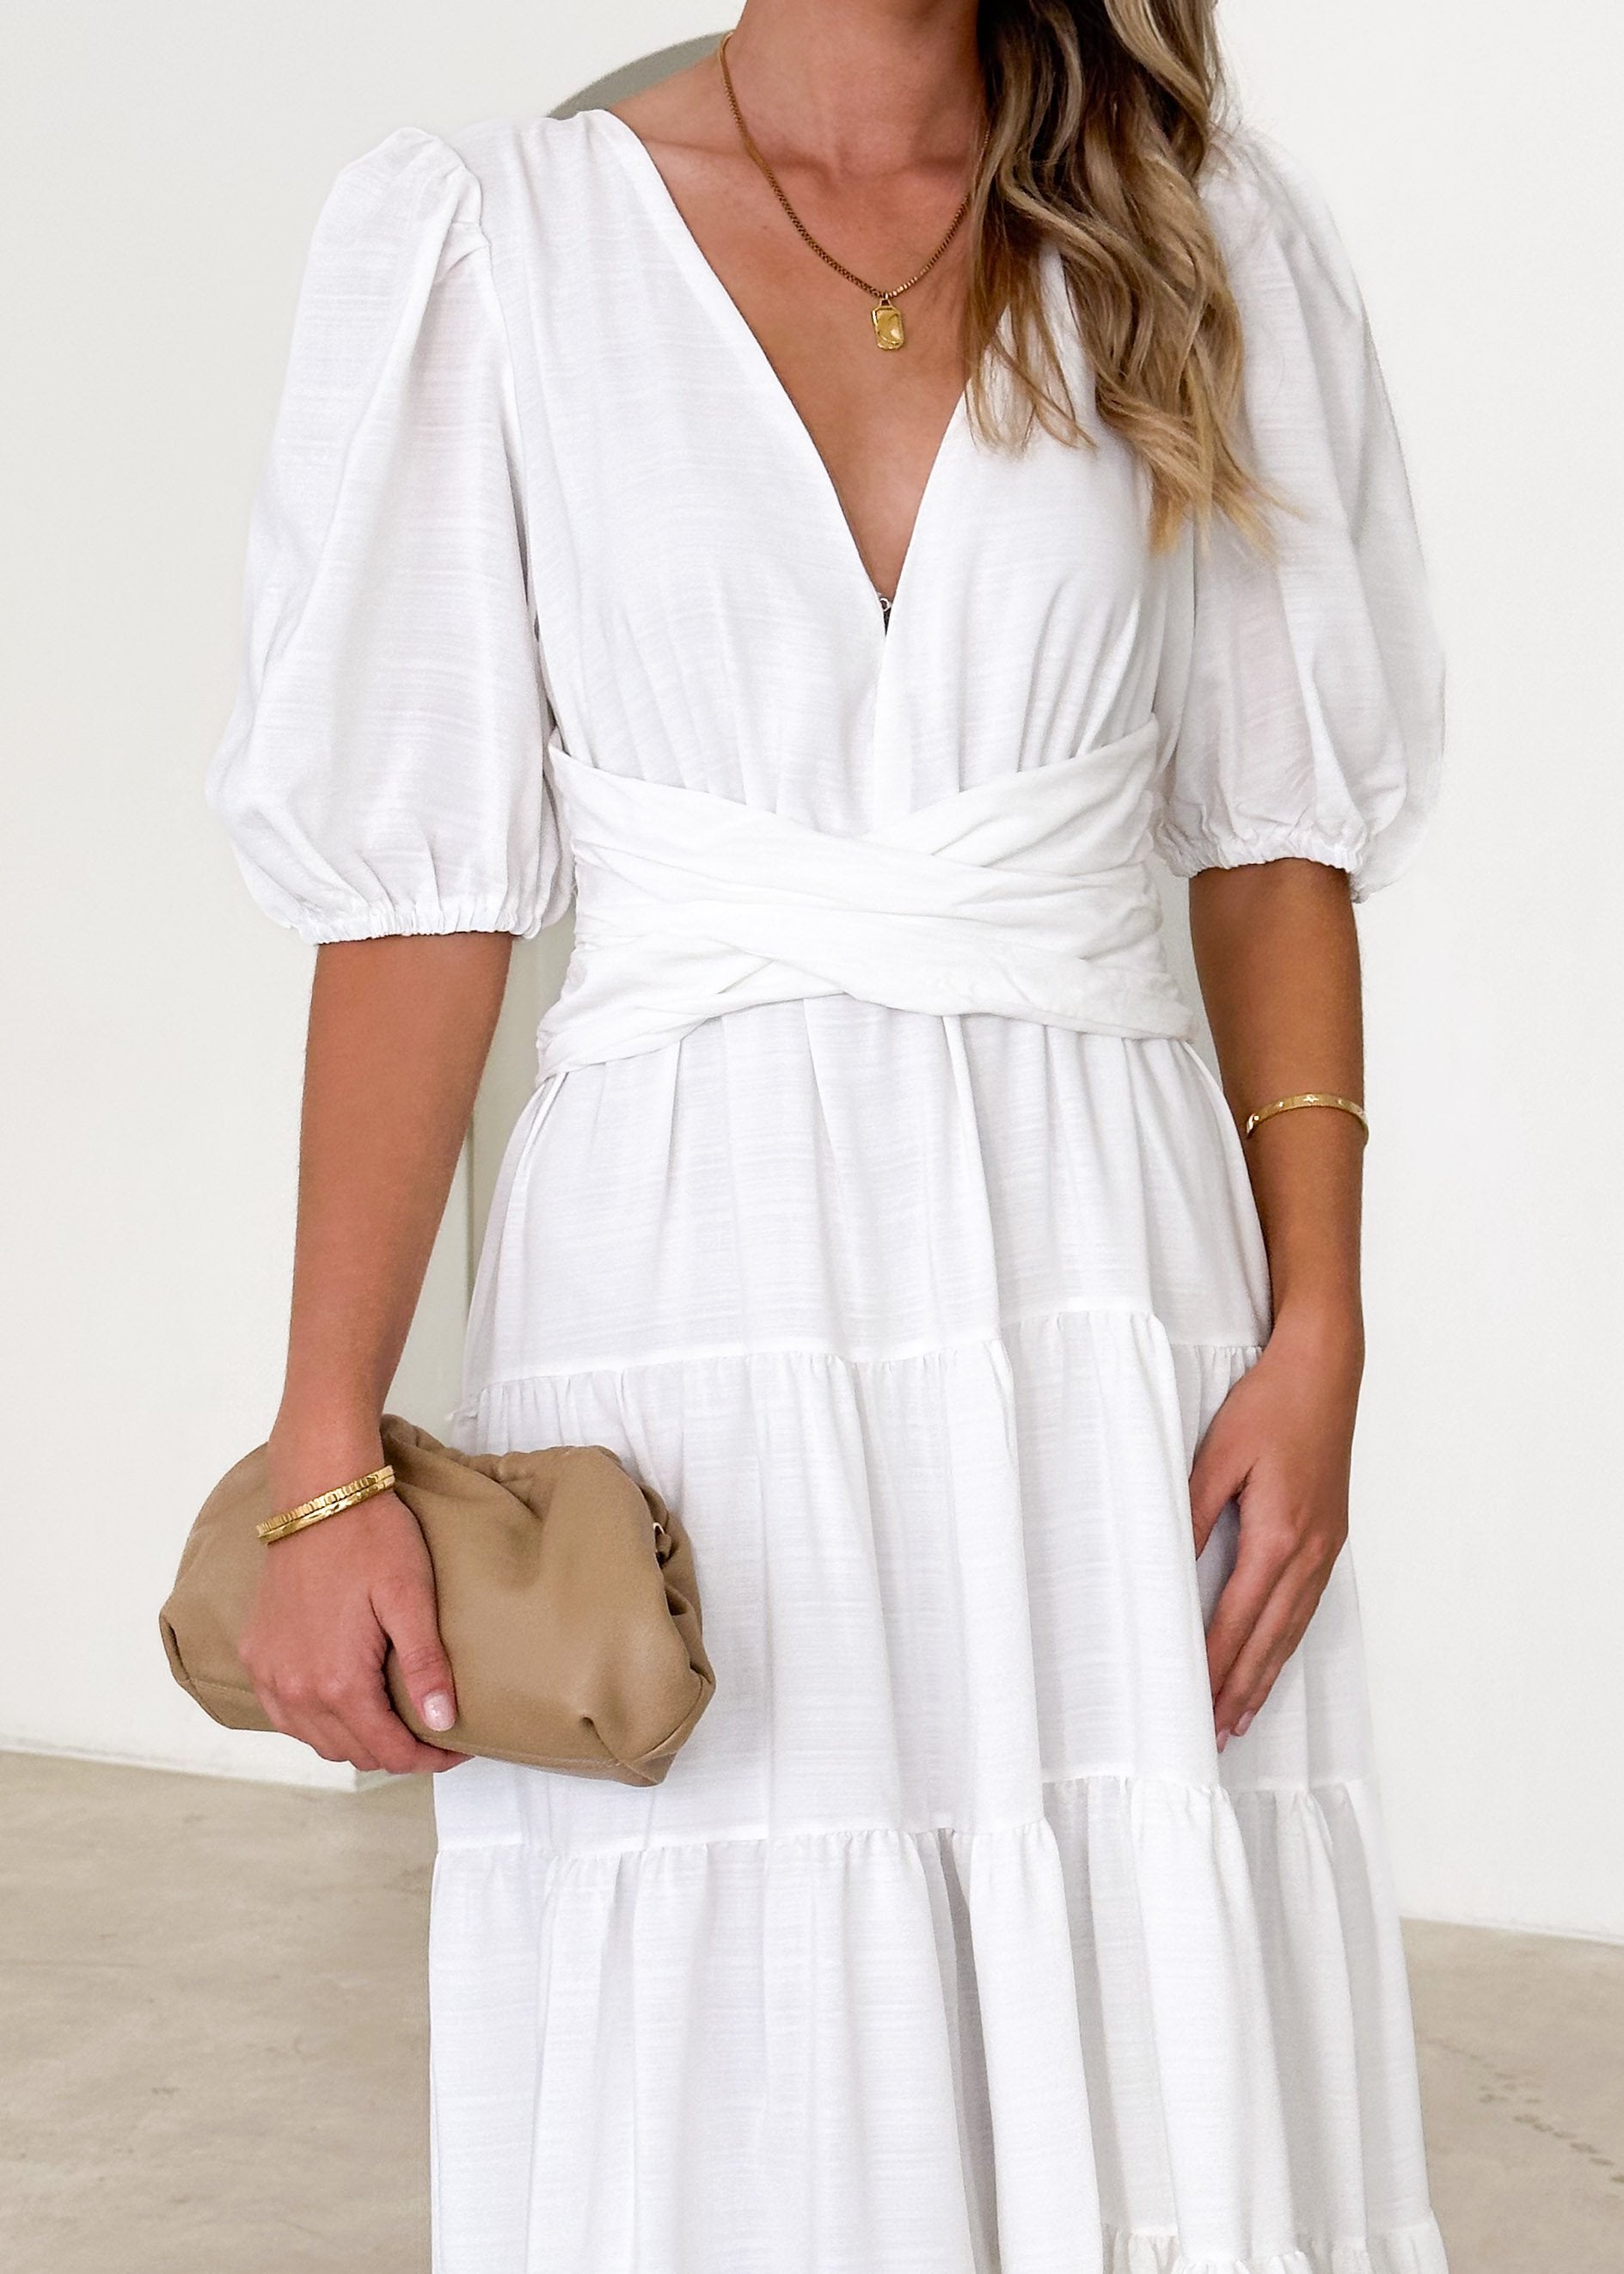 Geerio Maxi Dress - Off White